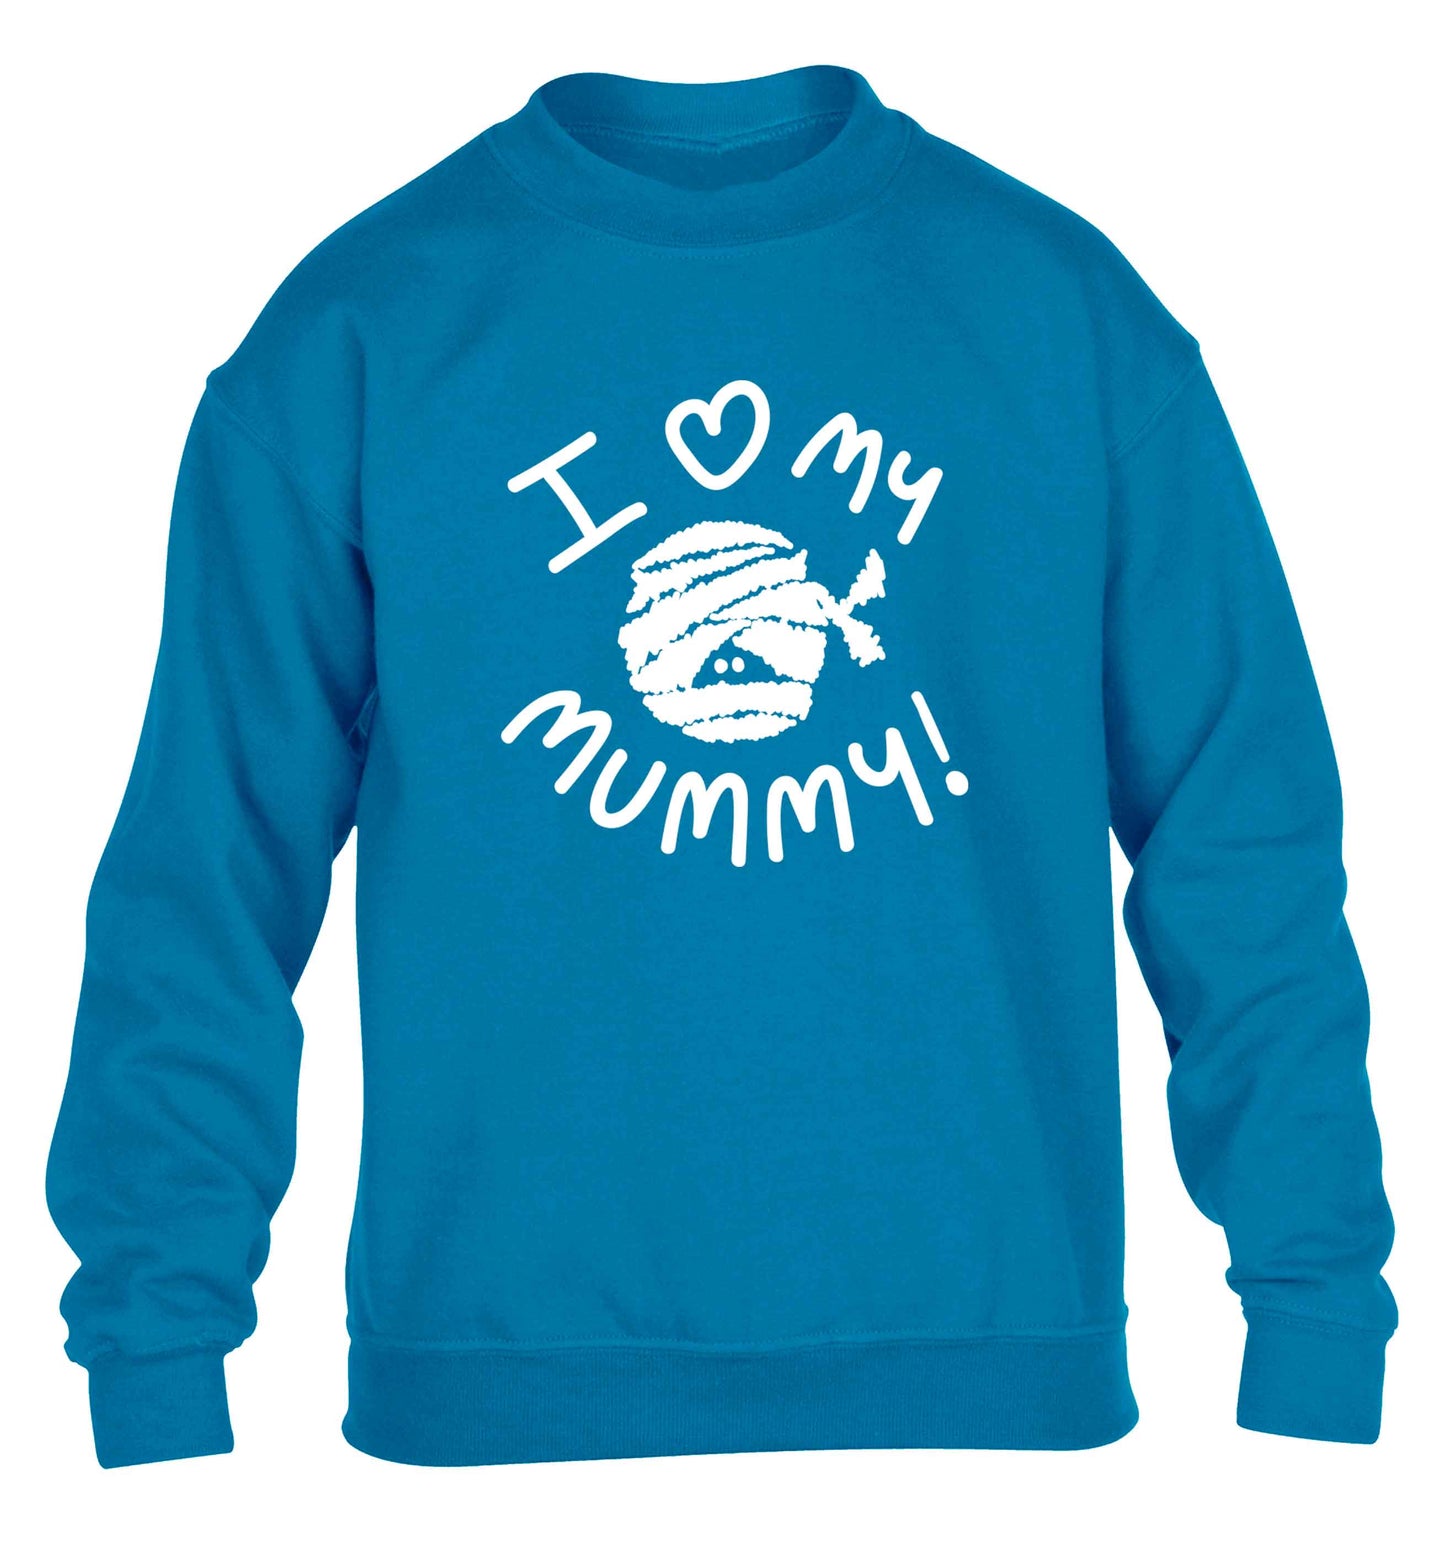 I love my mummy halloween pun children's blue sweater 12-13 Years